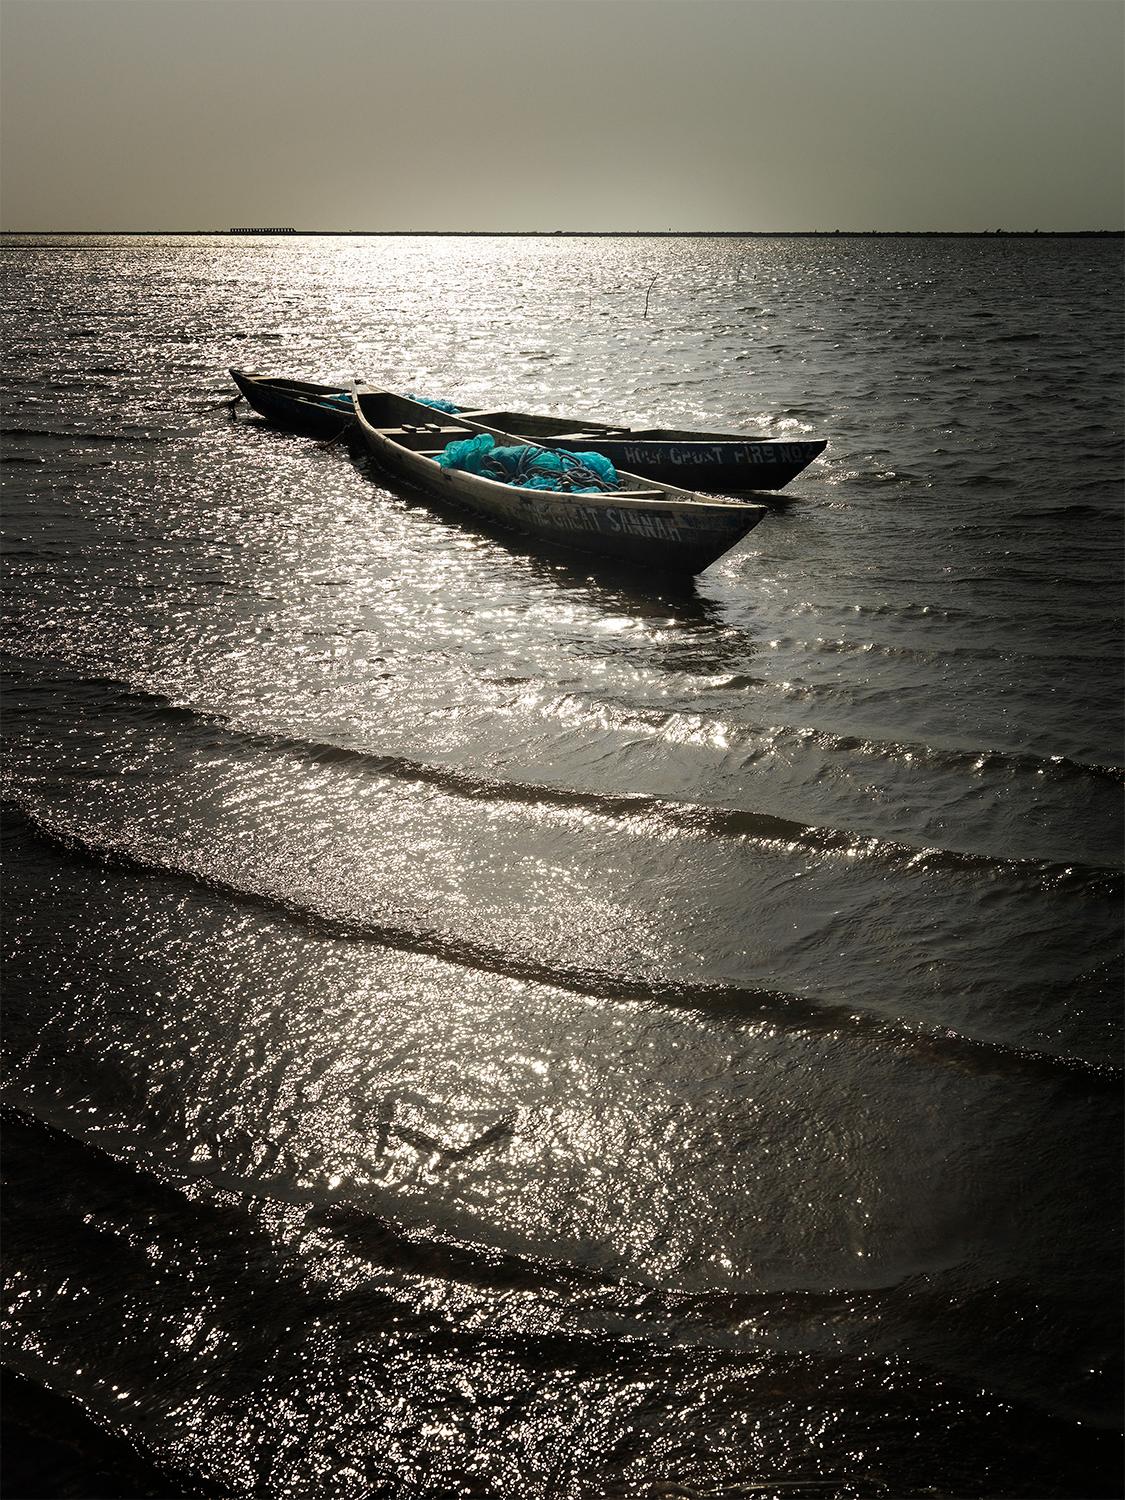 Edition de 25
signé et numéroté par l'artiste

2 bateaux de pêche dérivant sur la mer au Ghana. L'eau brille d'un éclat doré au coucher du soleil.

JJK est le pseudonyme de l'un des artistes photographes les plus célèbres au monde.
Dans sa série